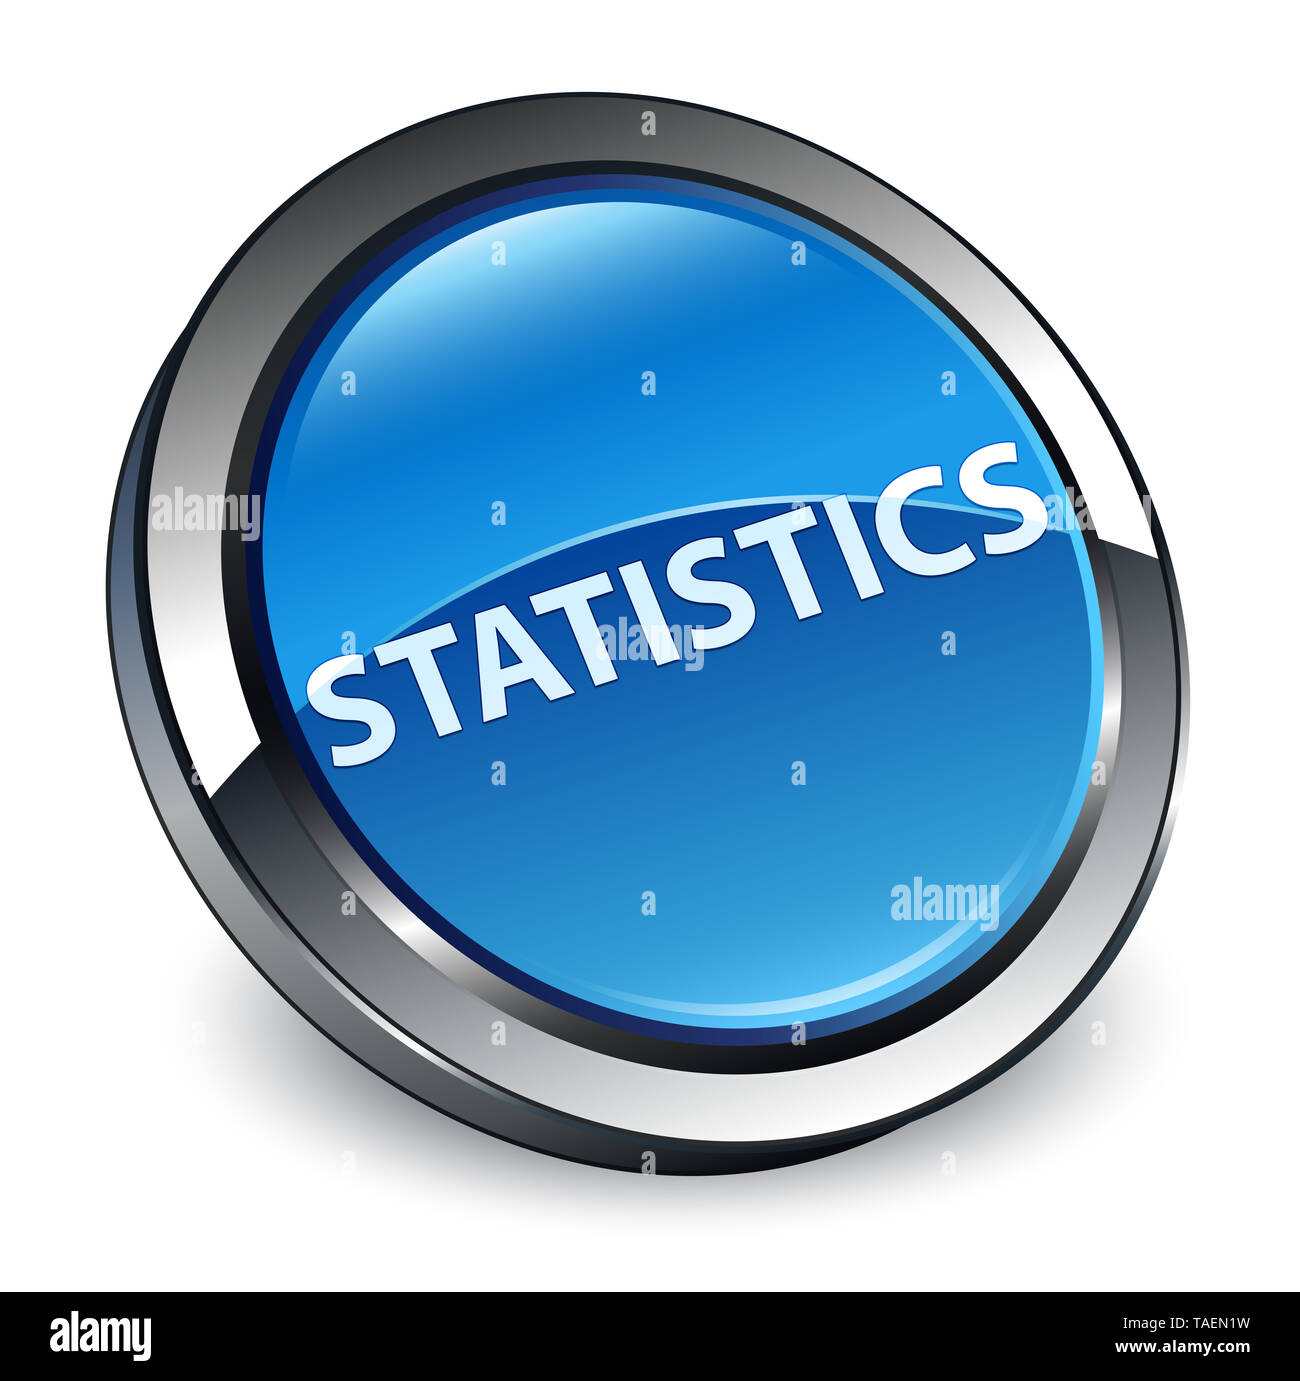 Statistiche isolati su 3d blu pulsante rotondo illustrazione astratta Foto Stock